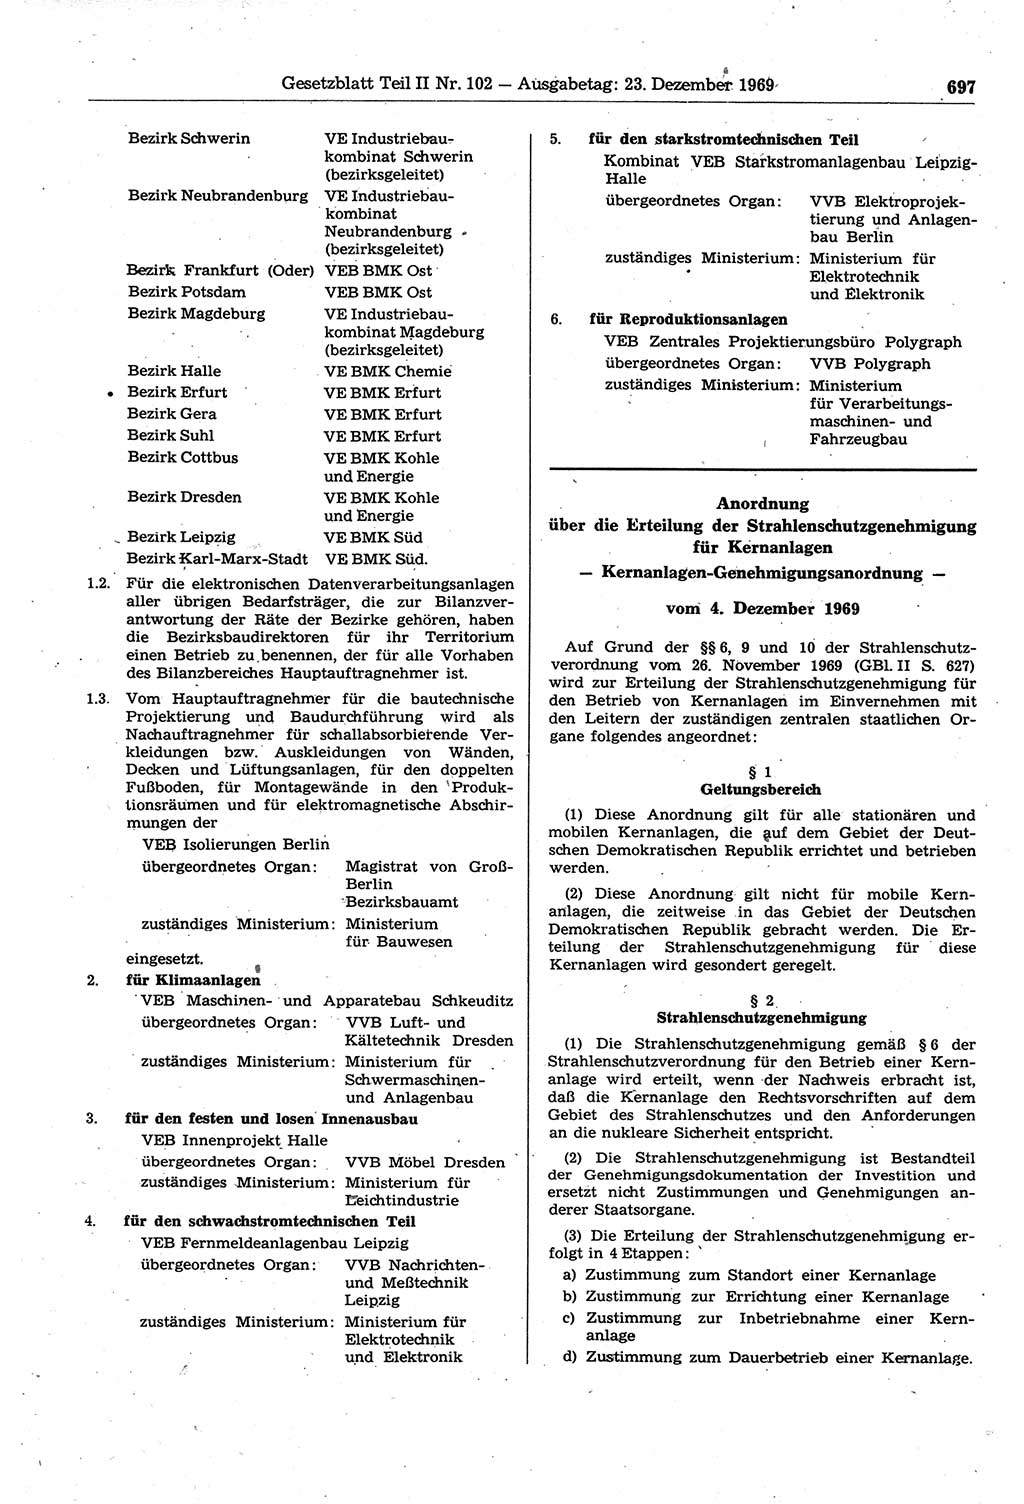 Gesetzblatt (GBl.) der Deutschen Demokratischen Republik (DDR) Teil ⅠⅠ 1969, Seite 697 (GBl. DDR ⅠⅠ 1969, S. 697)